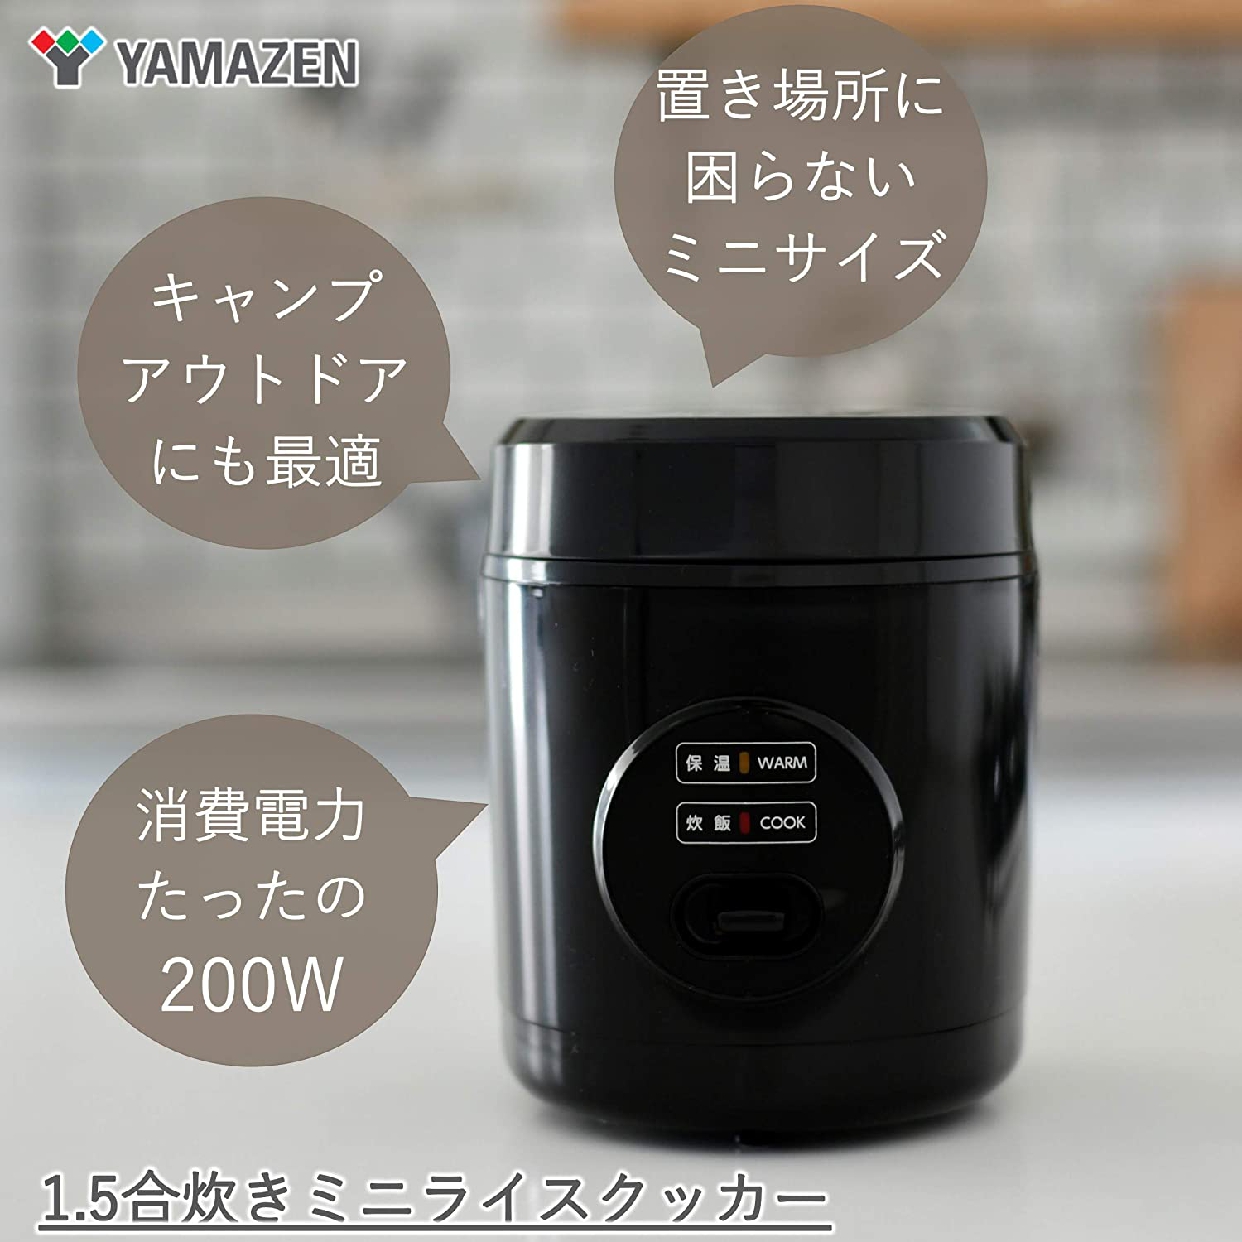 山善(YAMAZEN) マイコン炊飯器 YJG-M150の商品画像2 